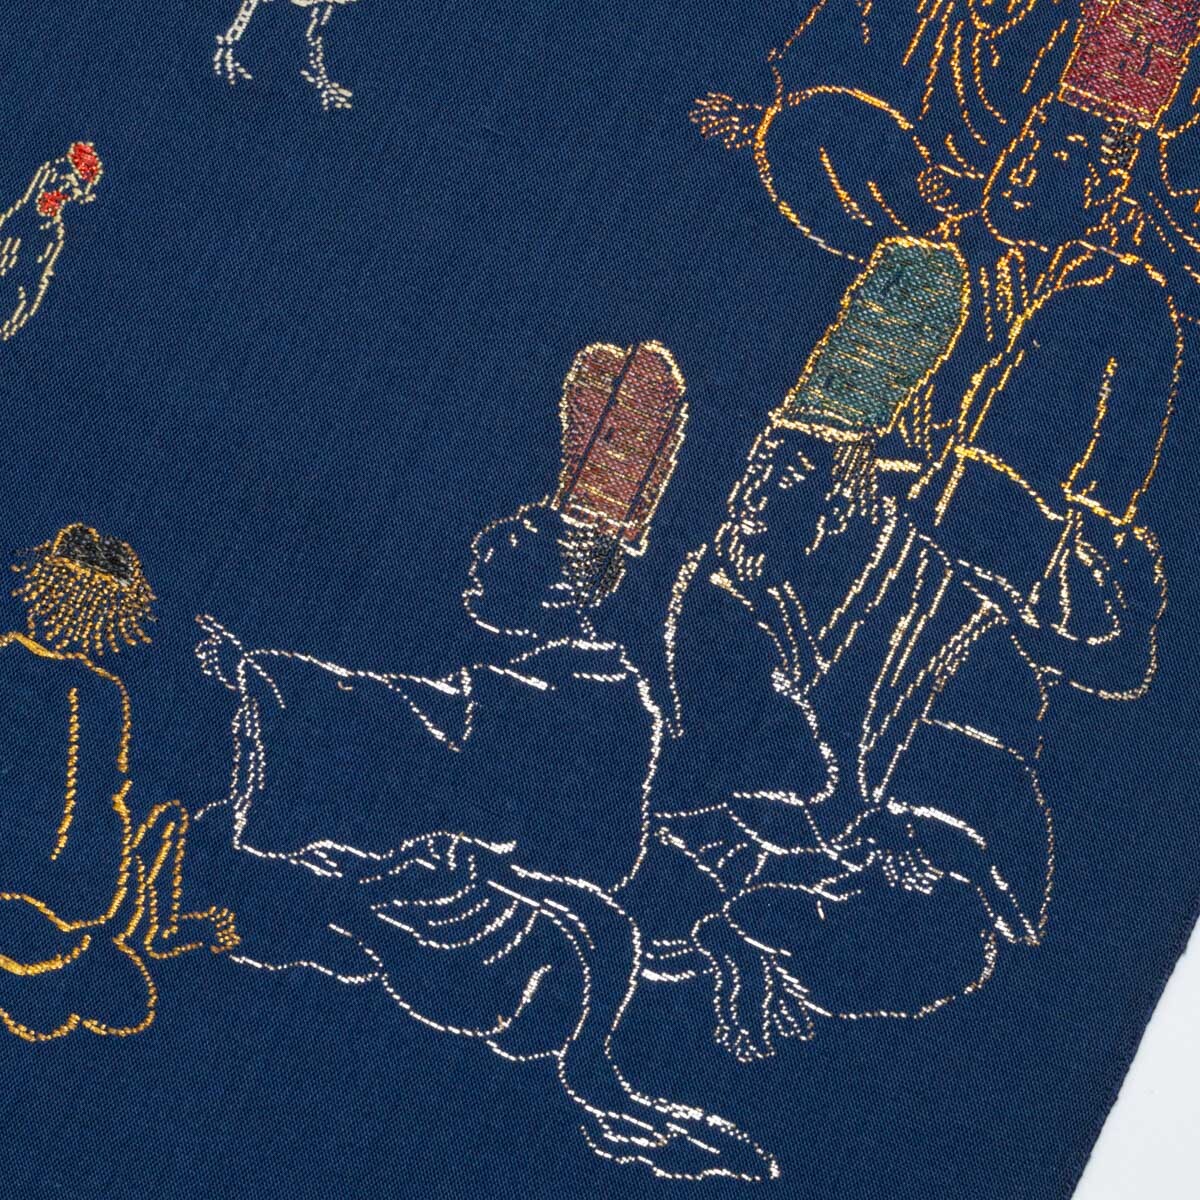 龍村平蔵 袋帯 鶏売りと町人の図 風俗画 濃紺 西陣織 正絹の画像6